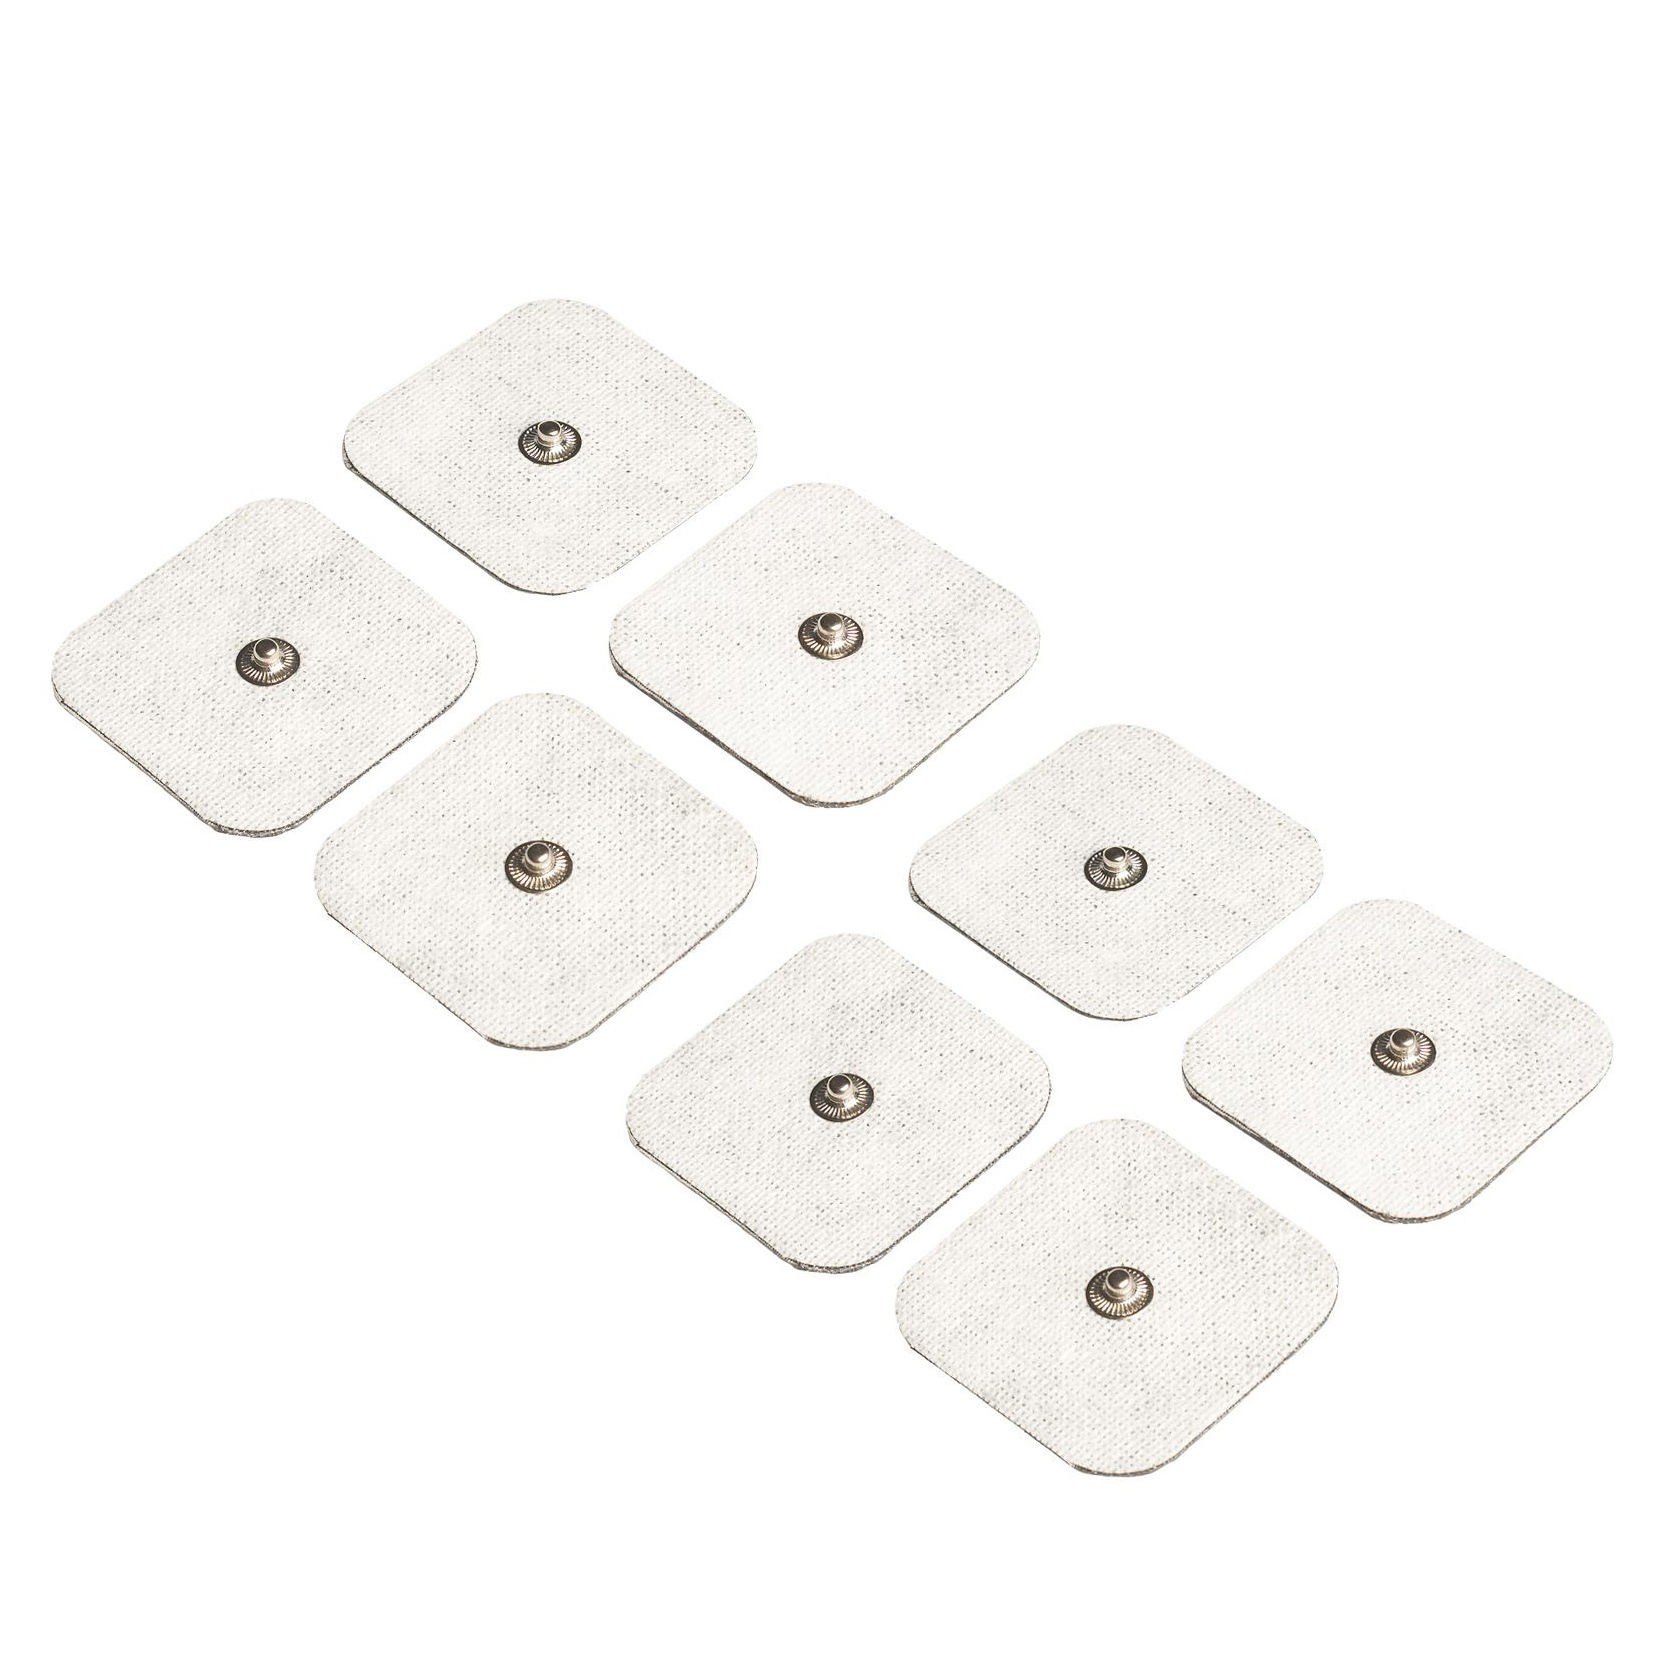 Selbsthaftende Gel Elektroden 45 x 45 mm (8 Stück) - Gesundheitscheck -  Marken